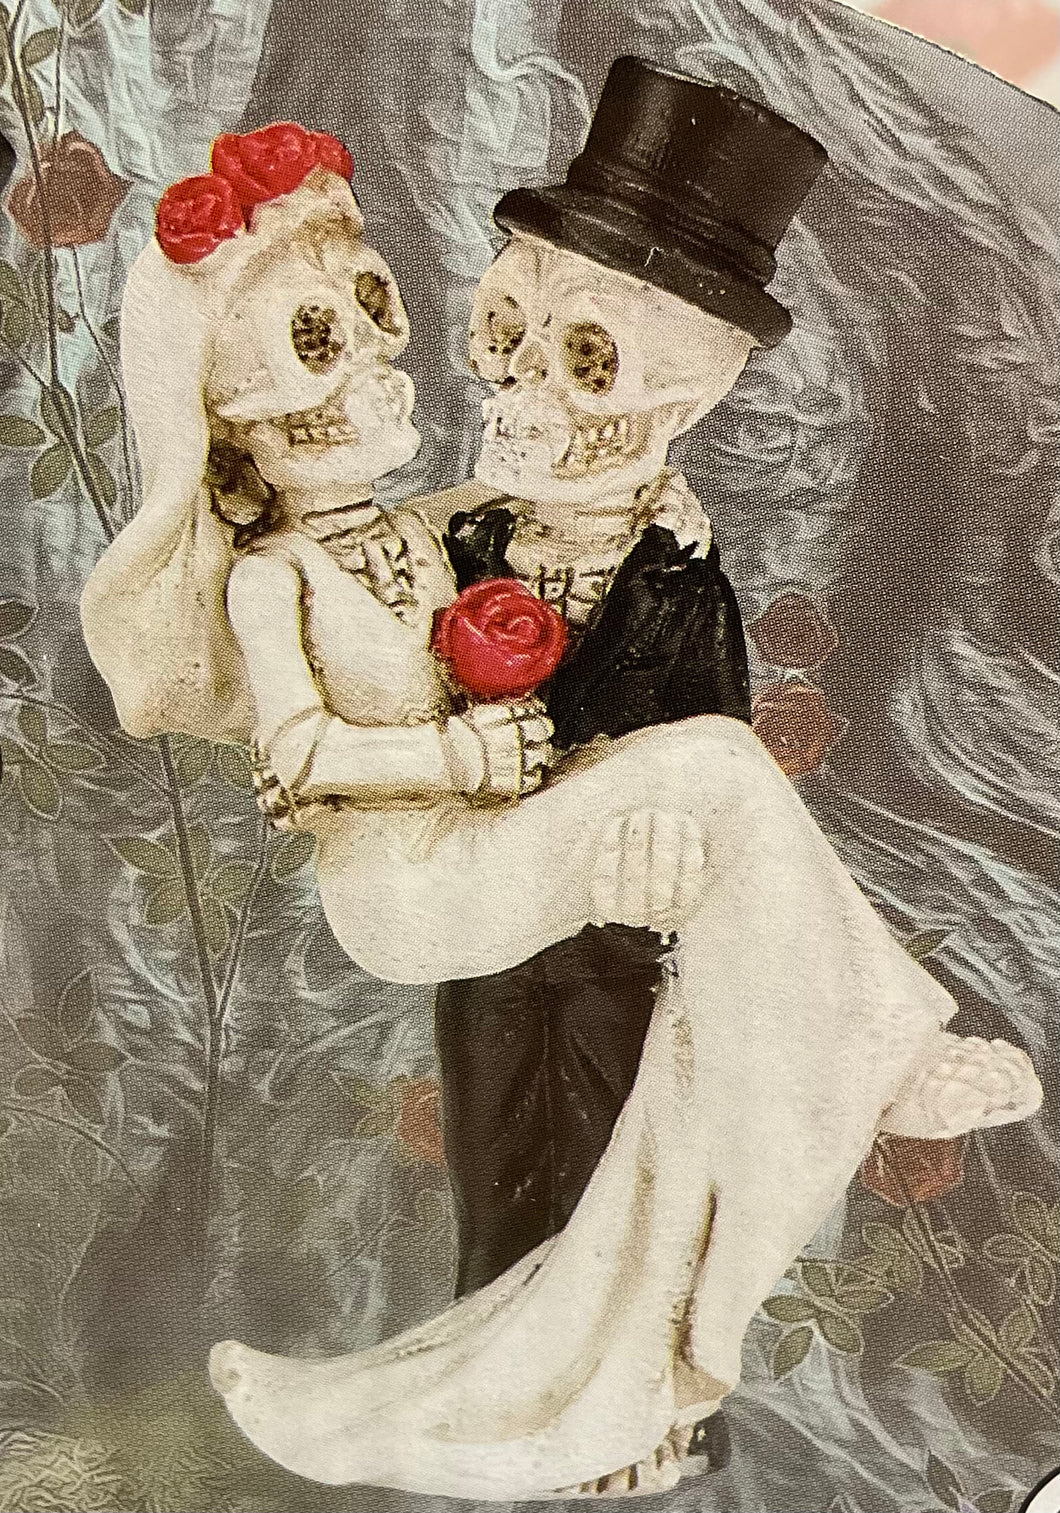 Skeleton groom holding bride figurine